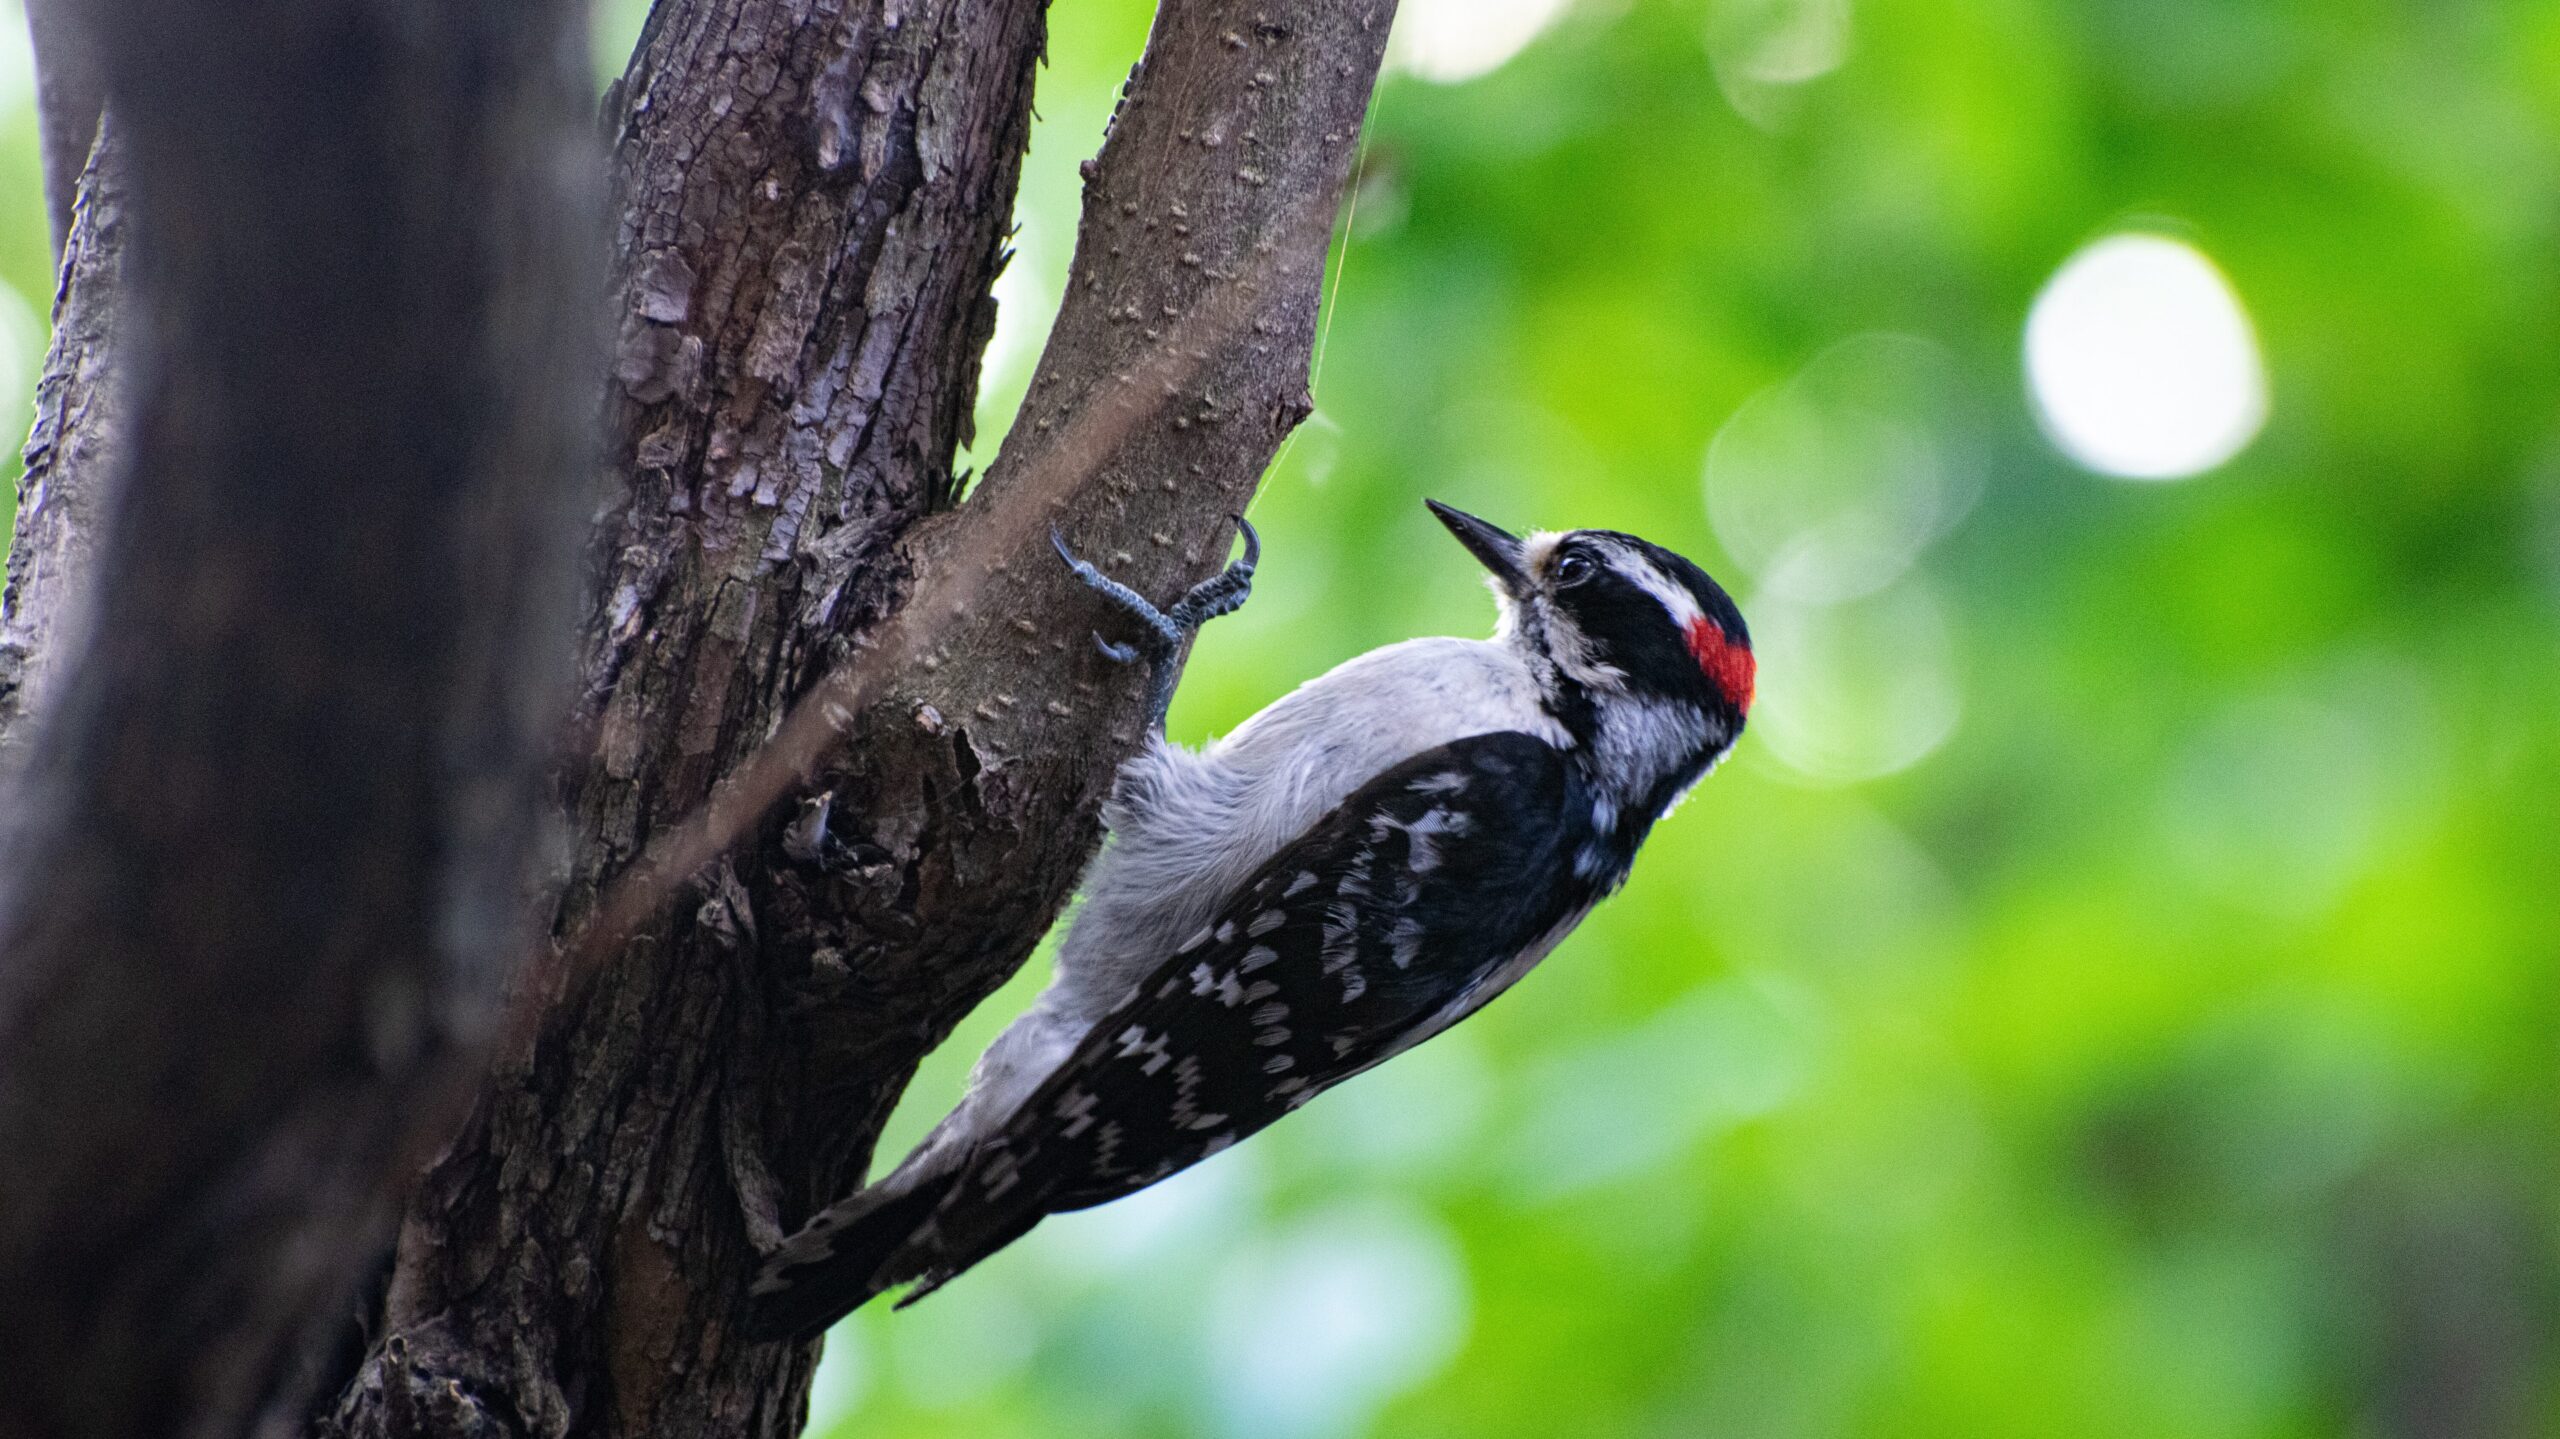 A woodpecker on a tree branch